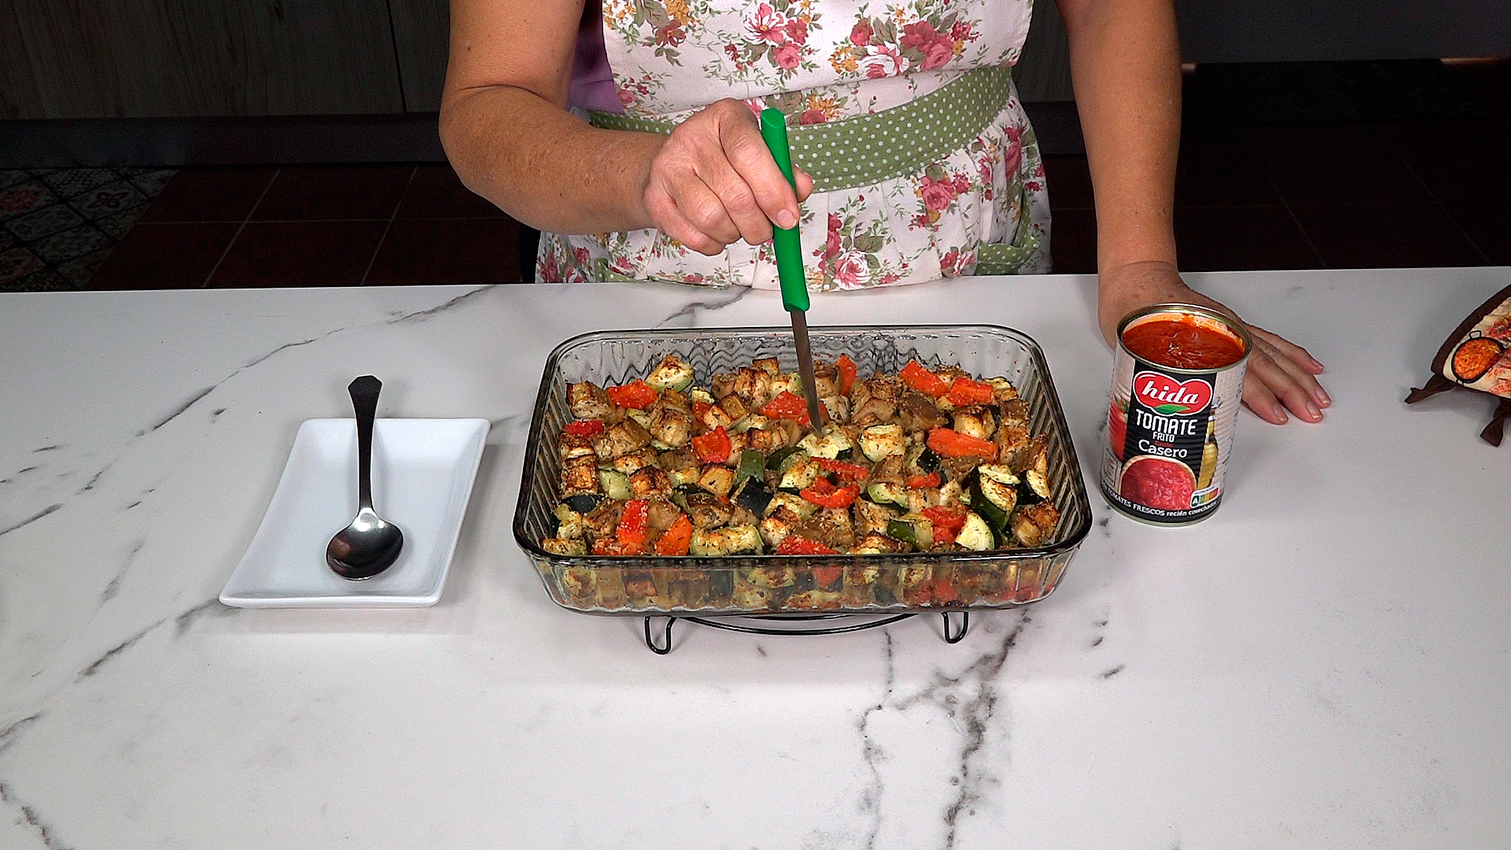 Verduras con queso al horno, receta fácil y saludable - Loli Domínguez - Foto 9